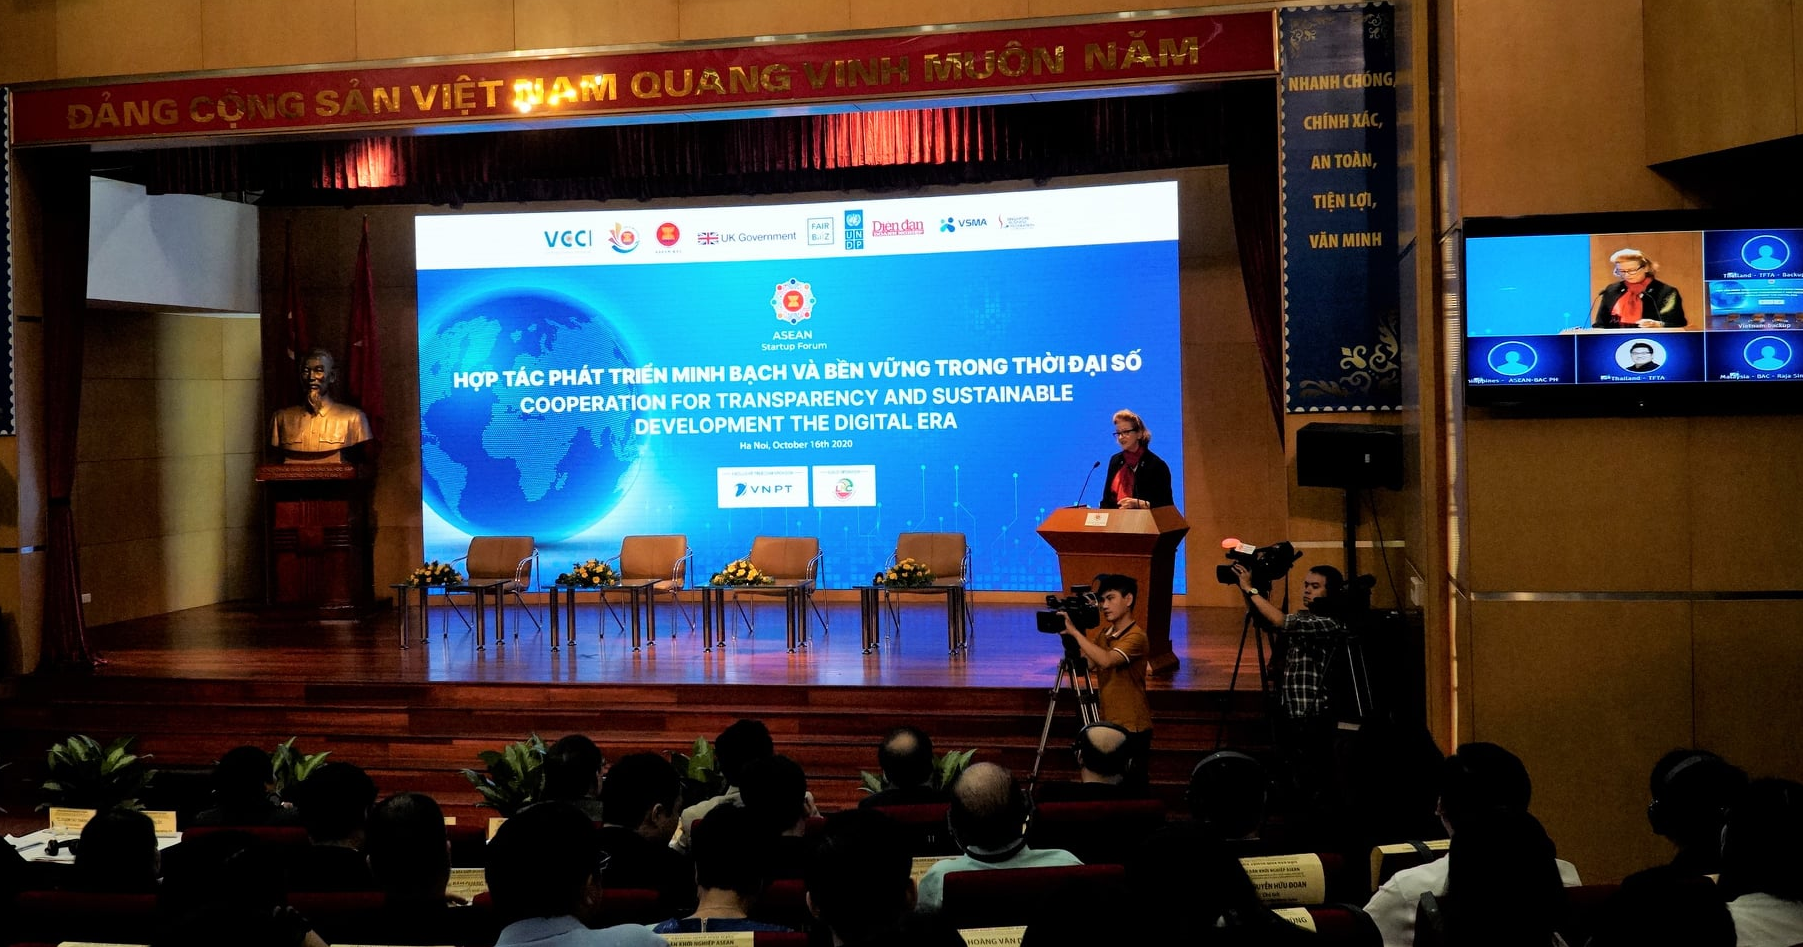 Khởi nghiệp ASEAN: Hợp tác phát triển minh bạch và bền vững trong thời đại số - Ảnh 2.